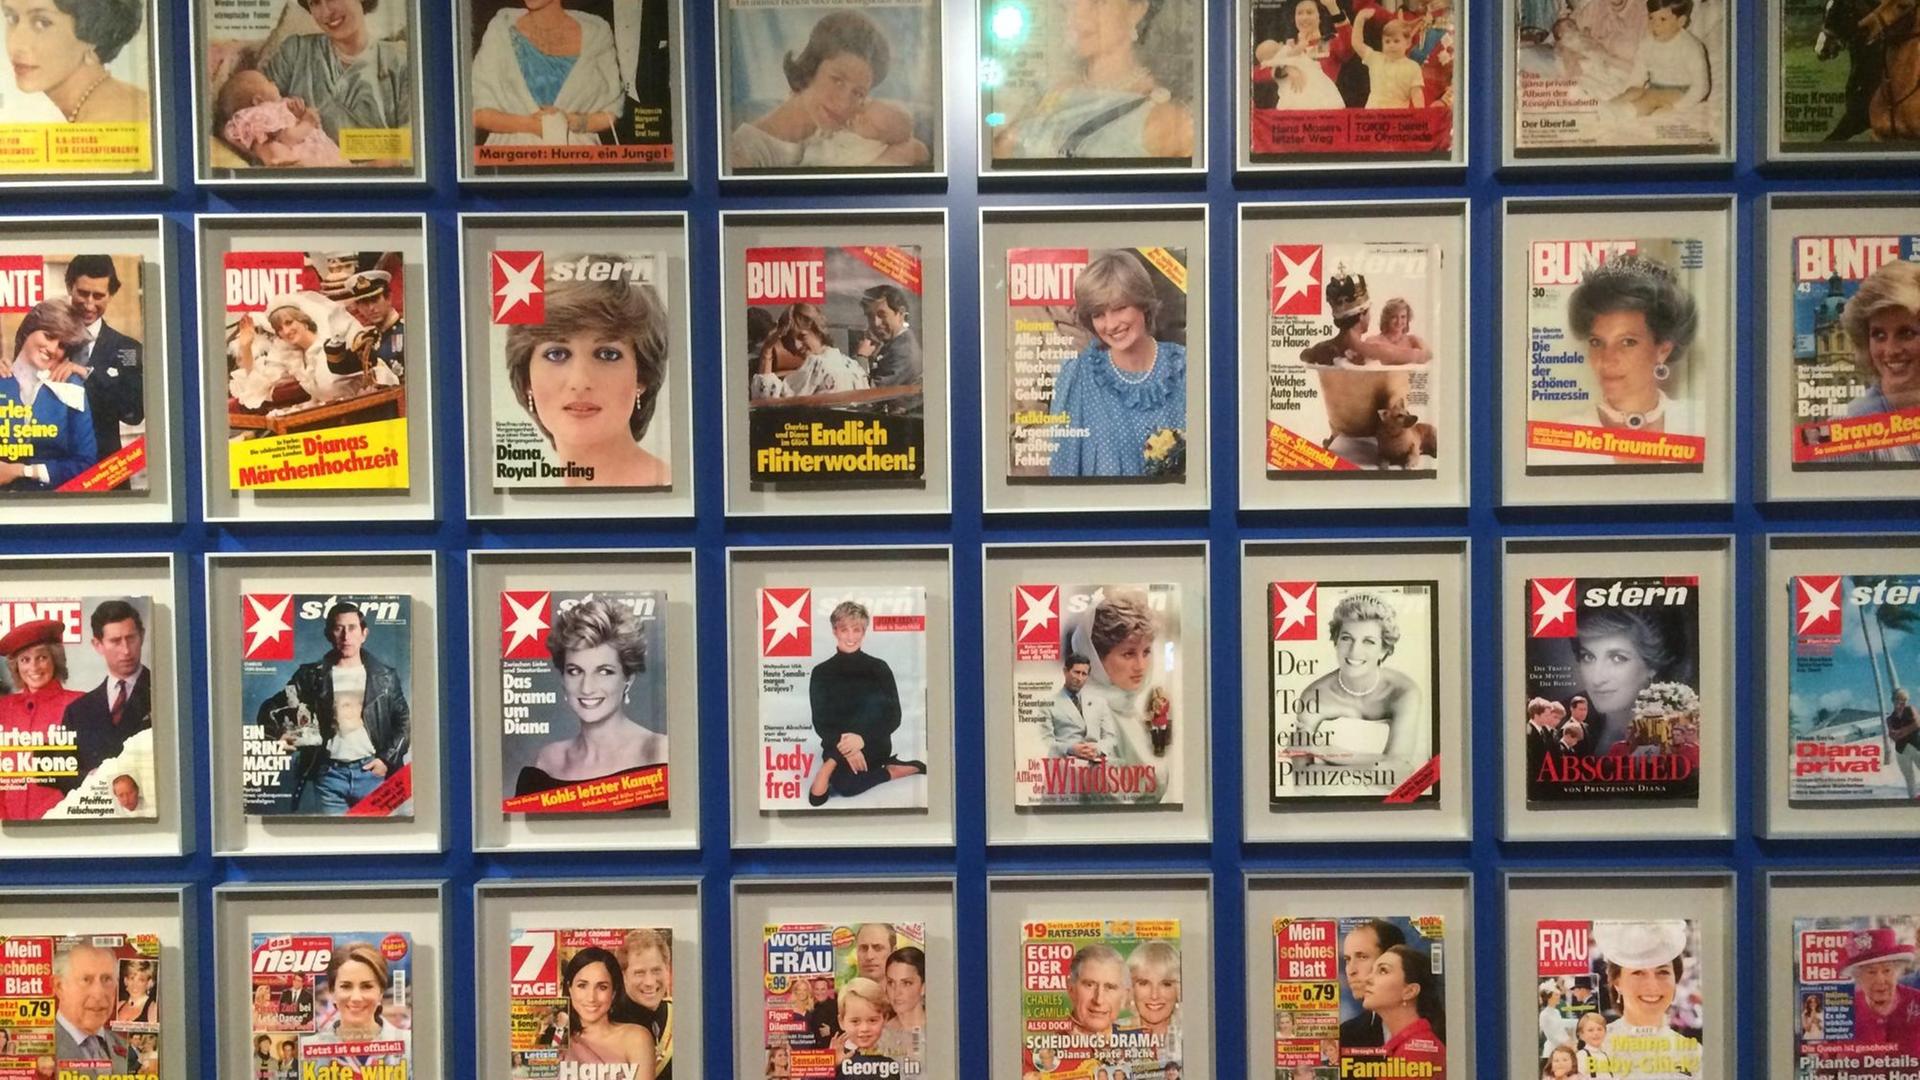 Eine Auswahl verschiedener Zeitschriften mit Berichterstattung über das britische Königshaus, fotografiert im Haus der Geschichte